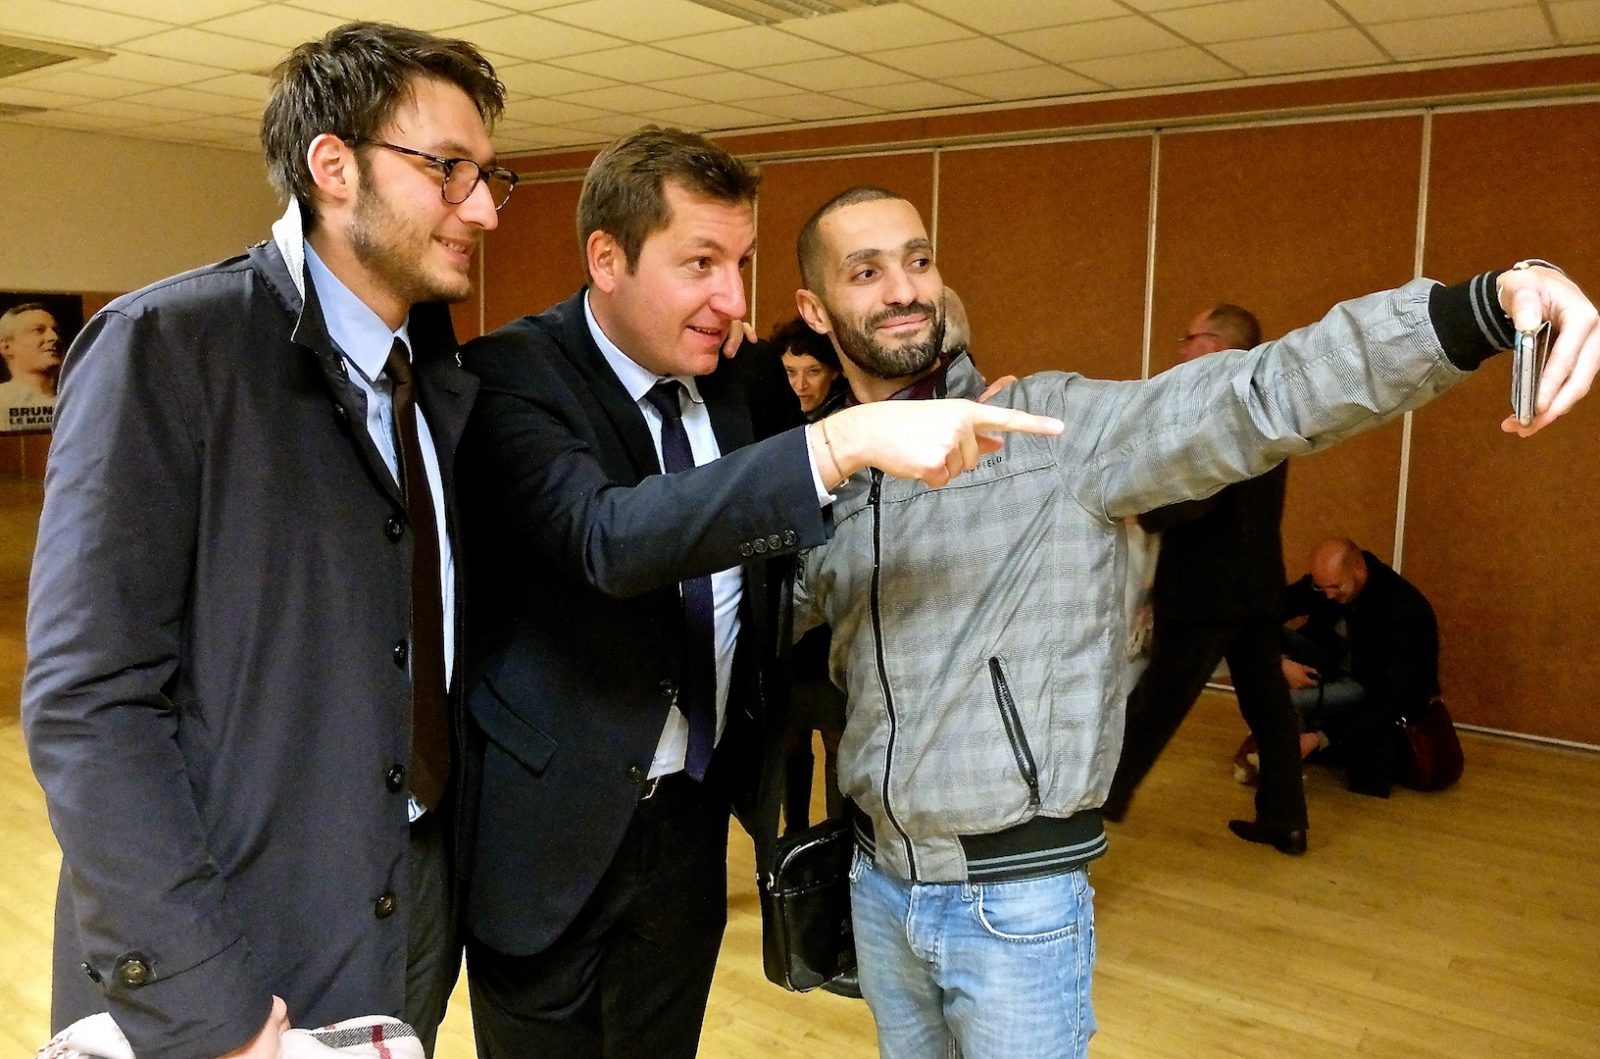 Alain Chrétien sacrifiant au selfie avec des sympathisants...  (photos Daniel Bordur)